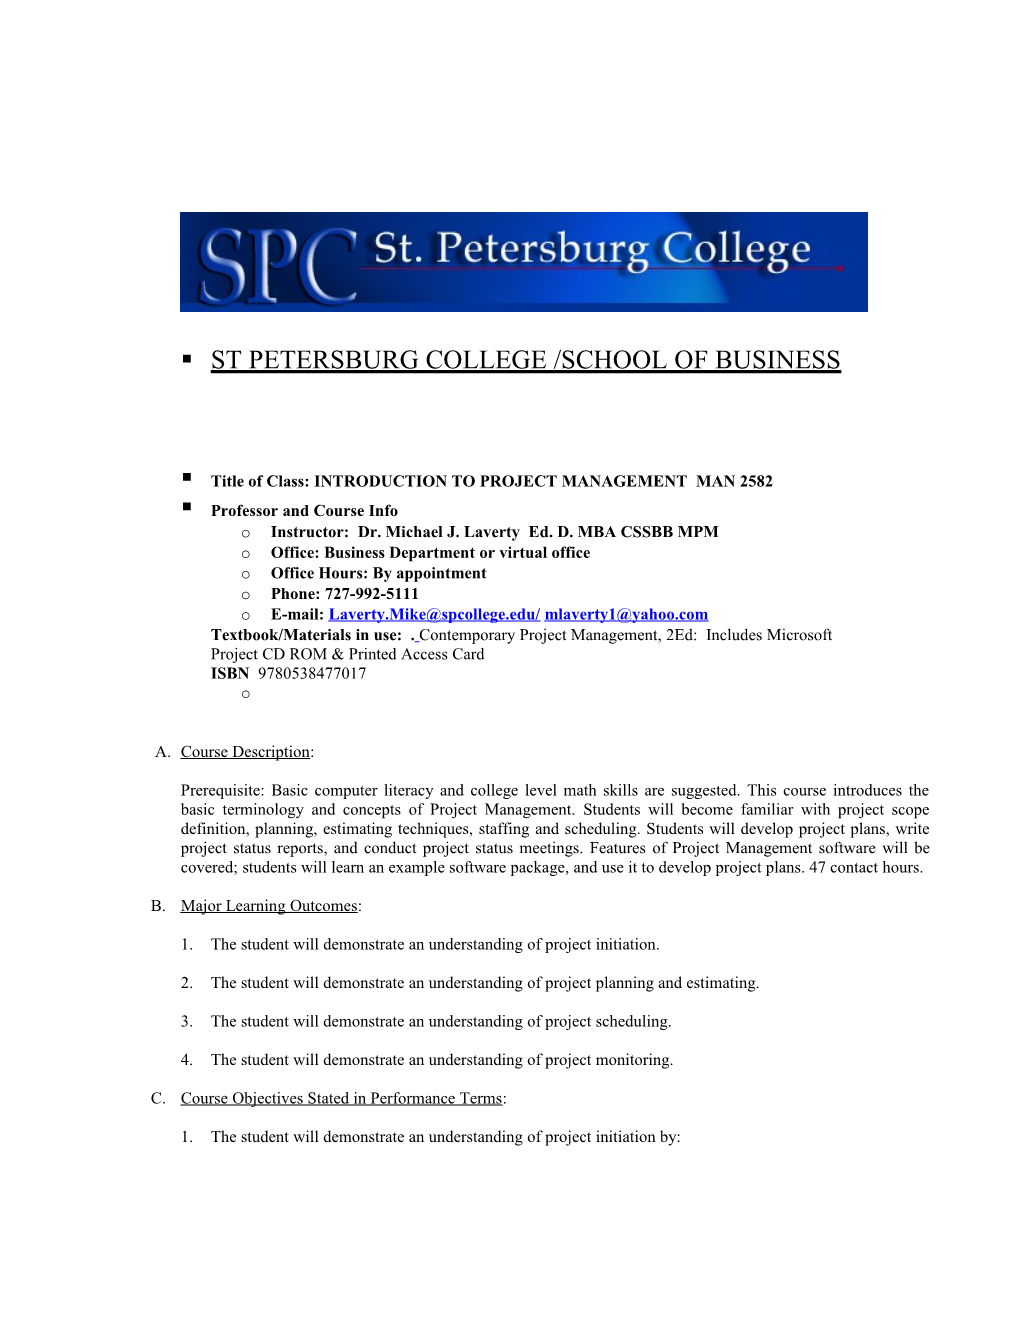 St Petersburg College /School of Business